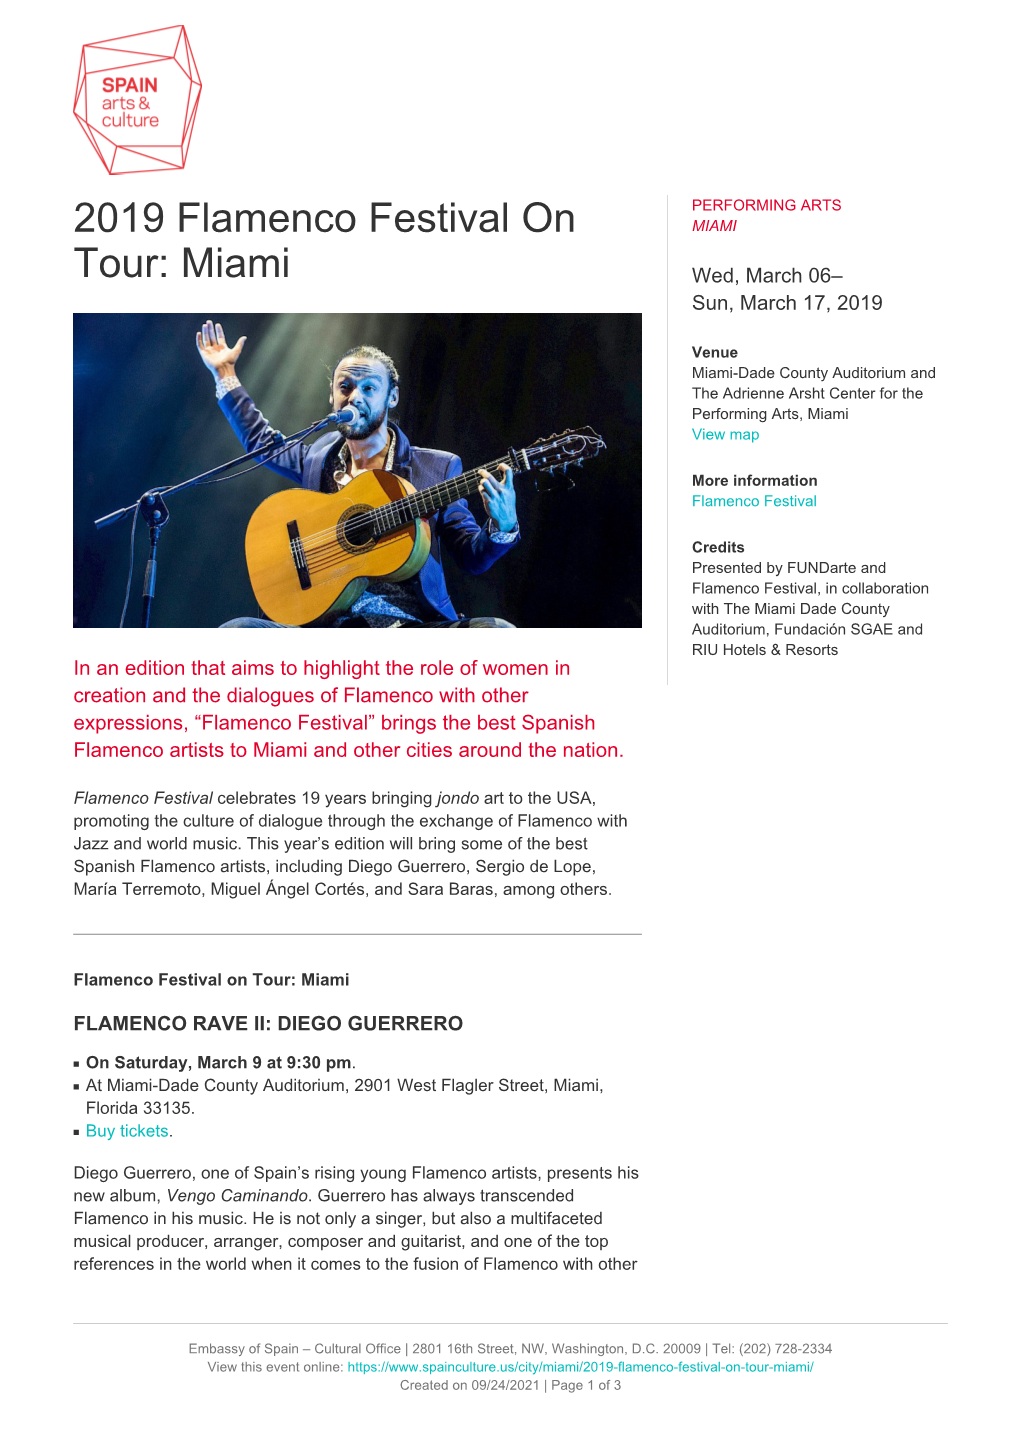 2019 Flamenco Festival on Tour: Miami